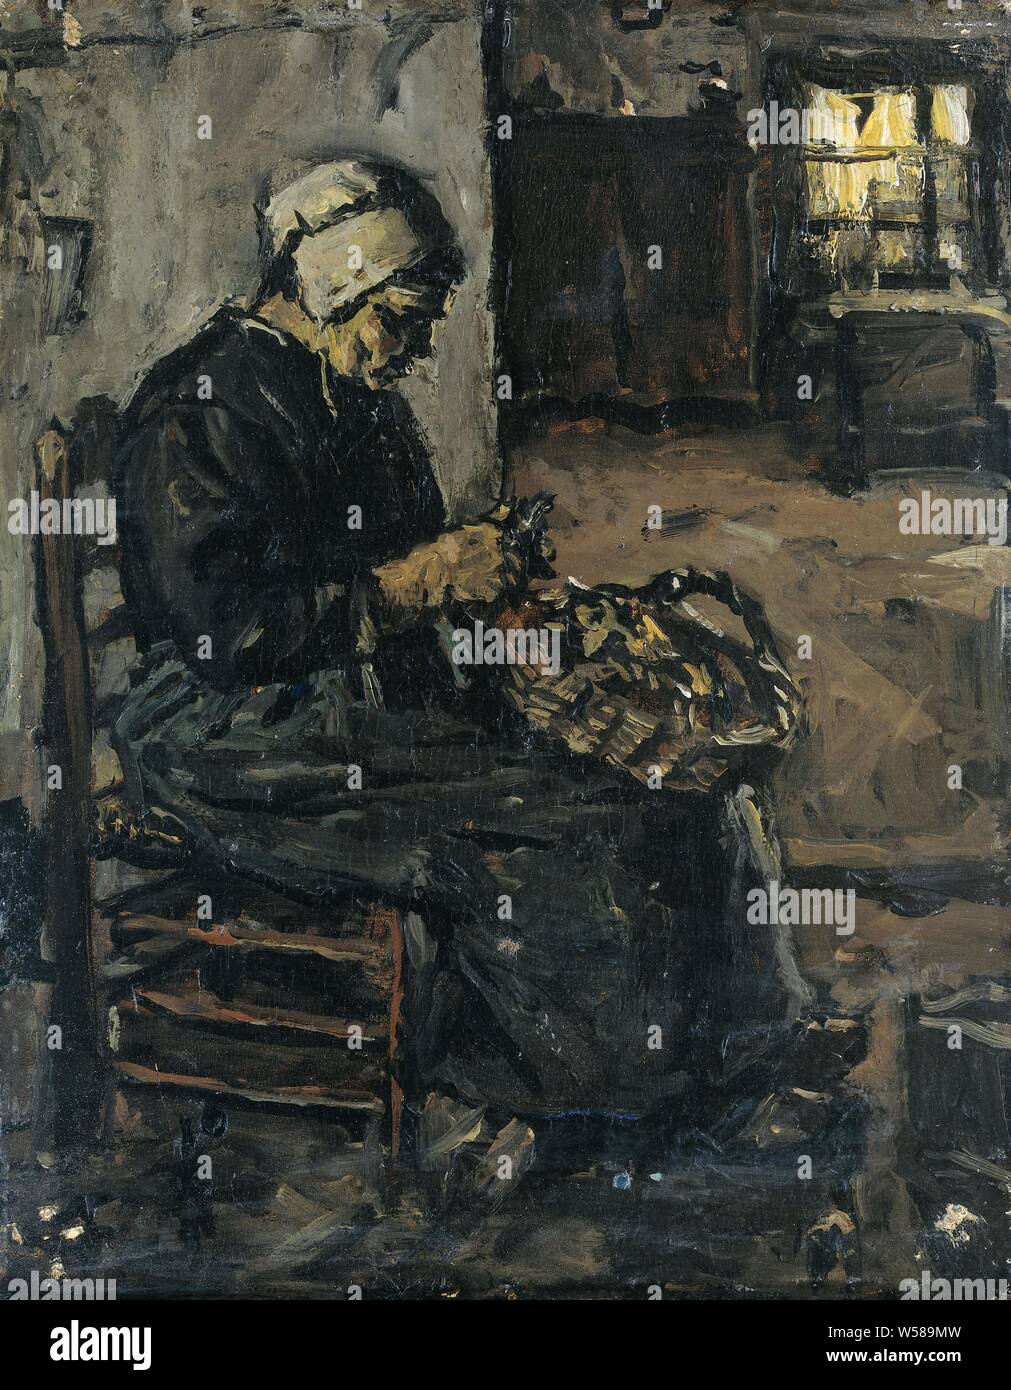 Peler paysanne, intérieur avec une femme de l'agriculteur l'épluchage des pommes de terre en position assise sur une chaise. Sur la droite un oeil jusqu'à une autre pièce, les pommes de terre, le nettoyage des légumes, Suze Robertson, 1875 - 1922, de bord, de la peinture à l'huile (peinture), h 26,2 cm × w 21 cm d 5,5 cm Banque D'Images